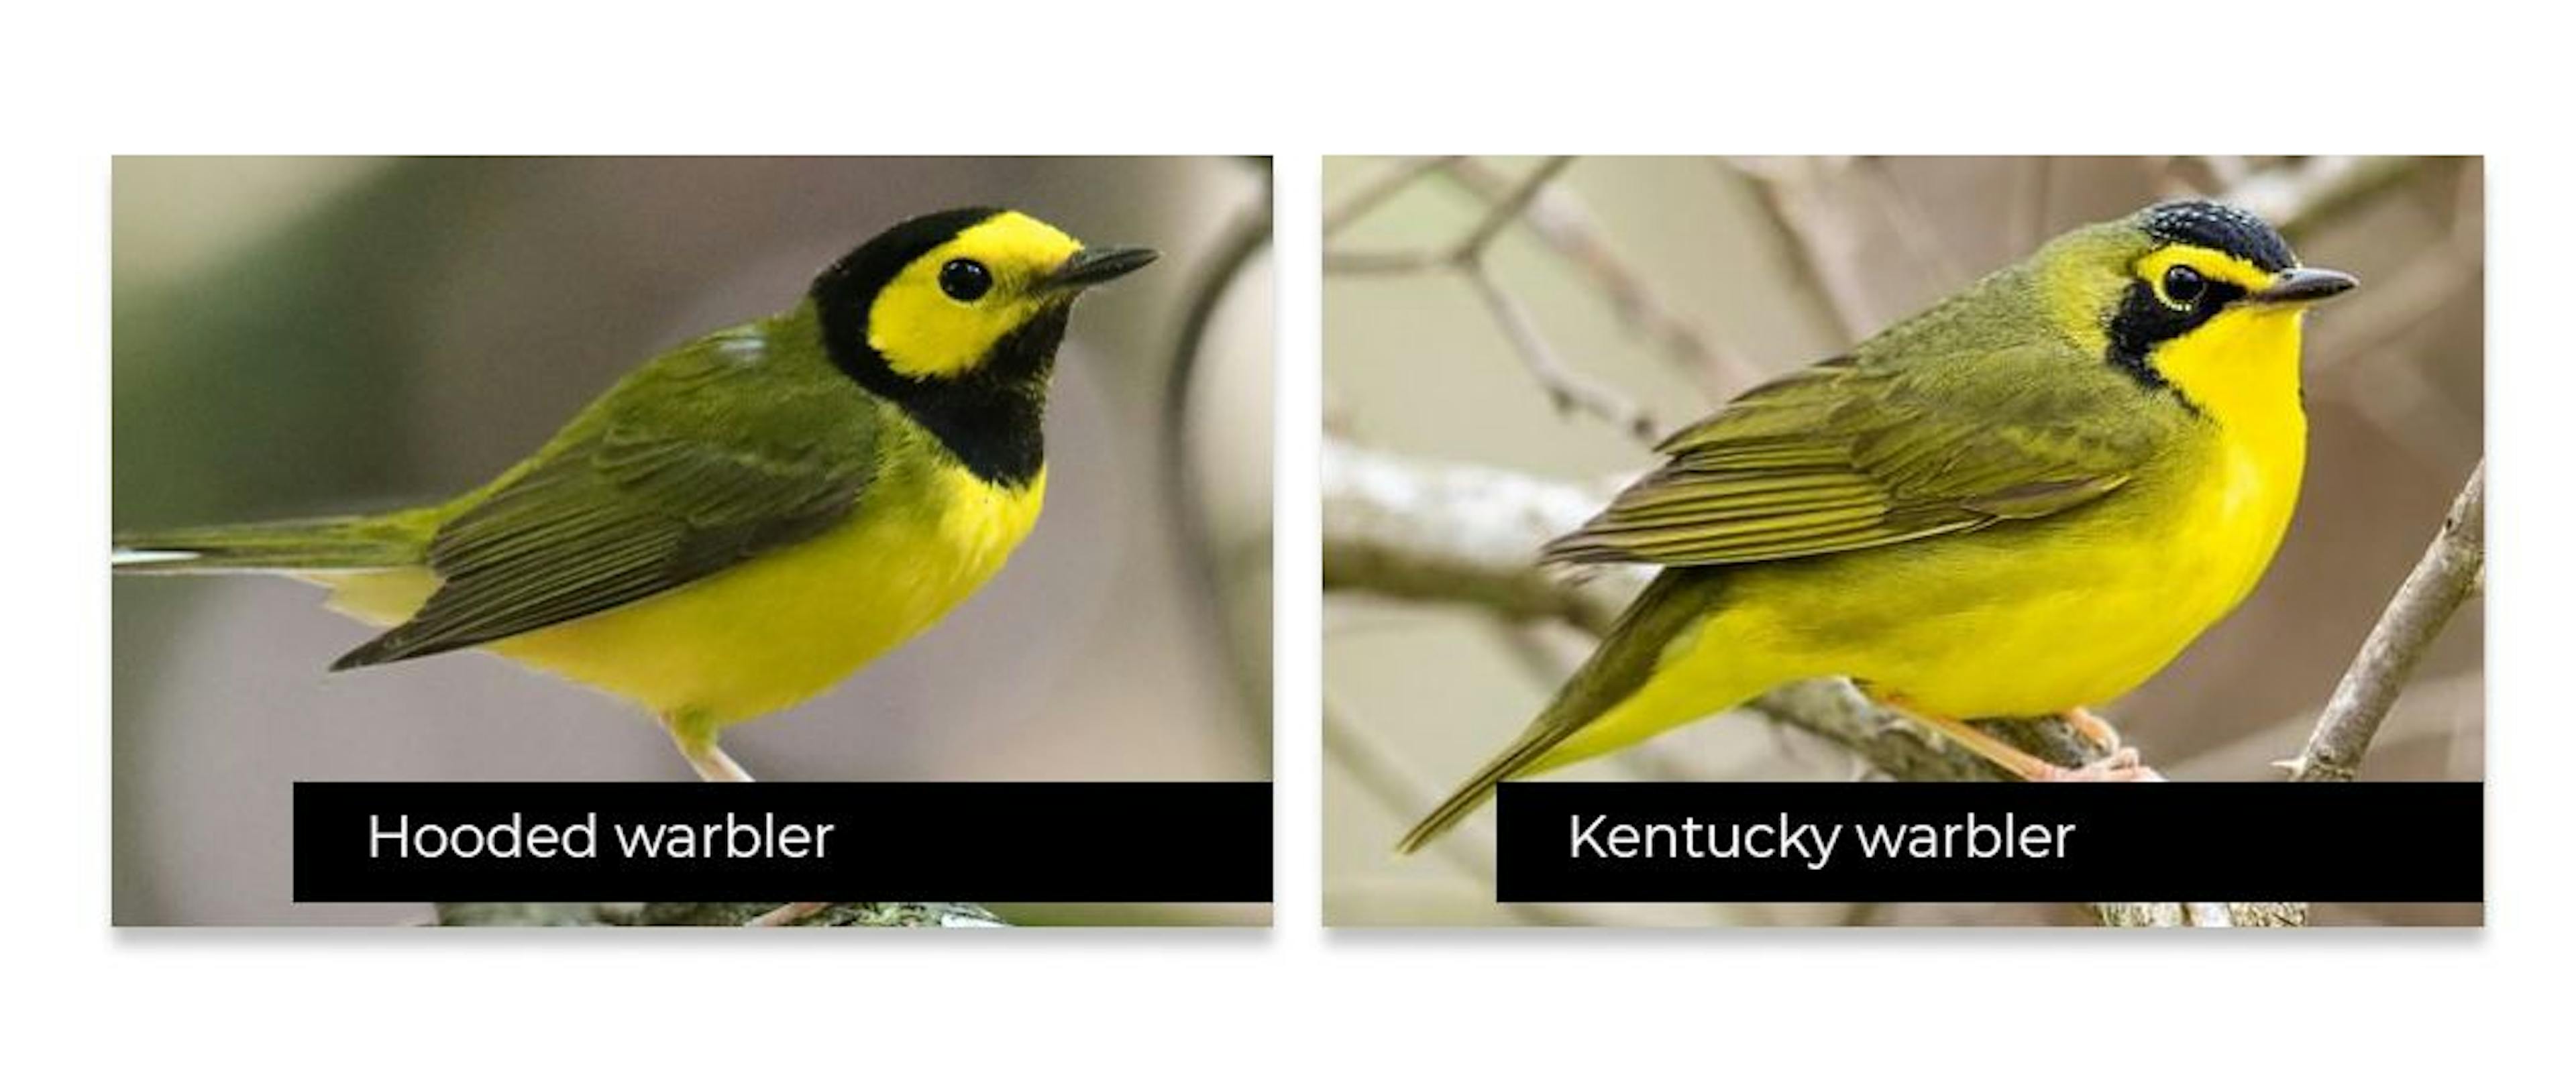 Algunas aves se parecen mucho entre sí, lo que dificulta detectarlas con precisión.